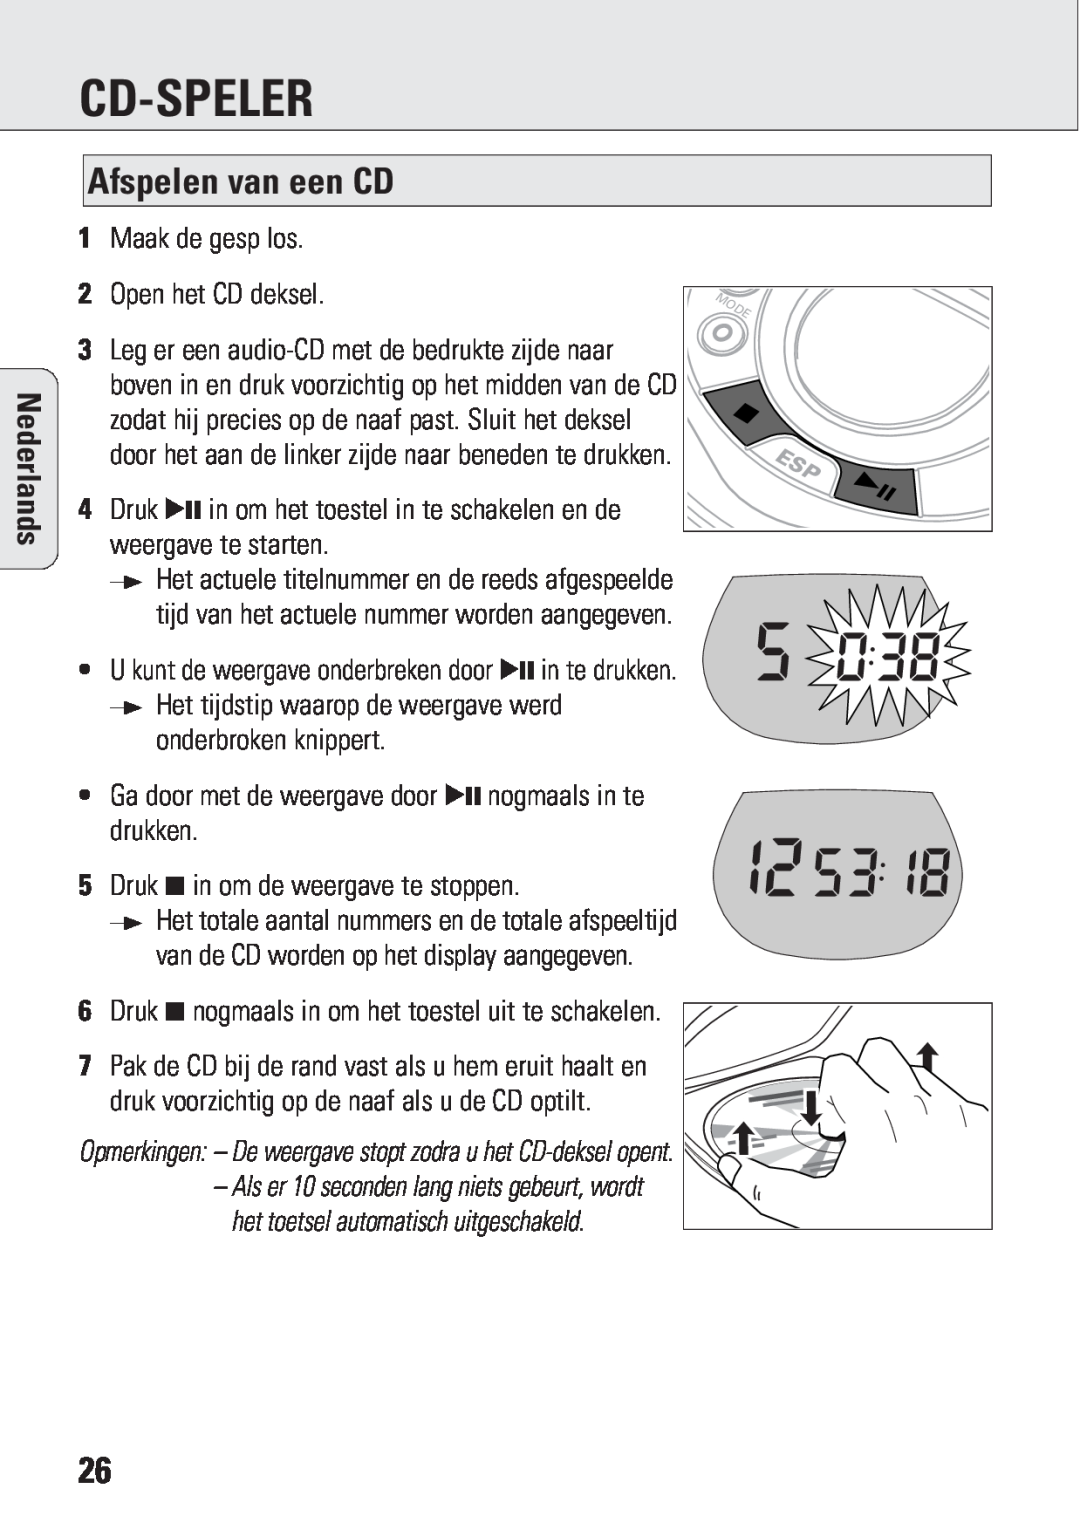 Philips ACT 7583 manual Cd-Speler, Afspelen van een CD, Nederlands 